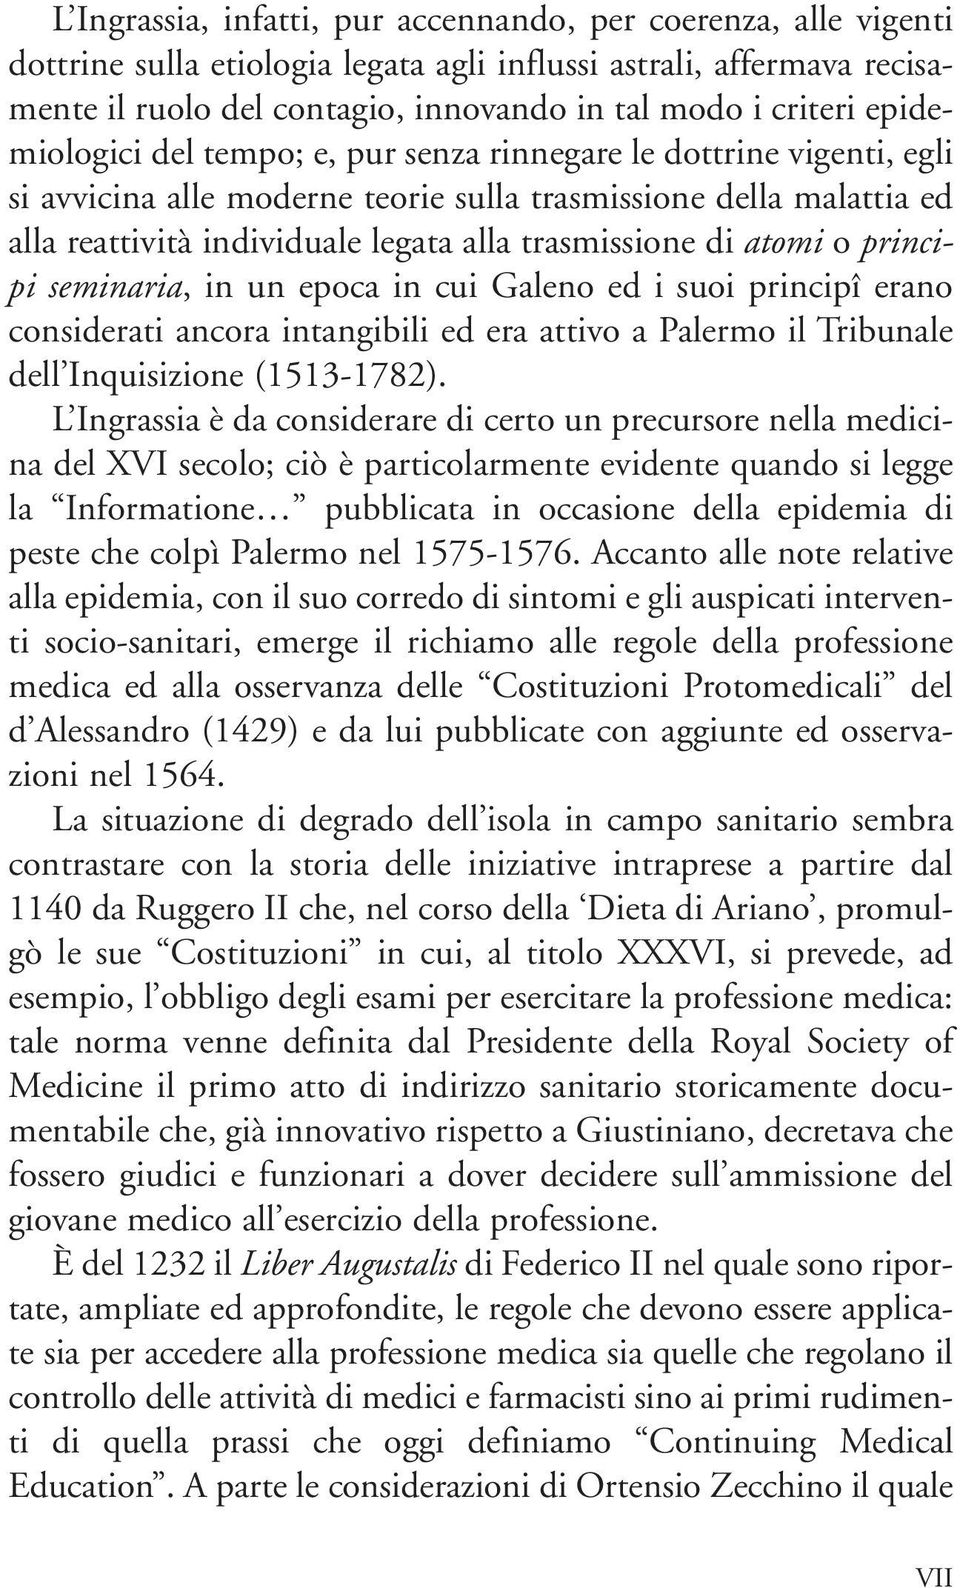 atomi o principi seminaria, in un epoca in cui Galeno ed i suoi principî erano considerati ancora intangibili ed era attivo a Palermo il Tribunale dell Inquisizione (1513-1782).